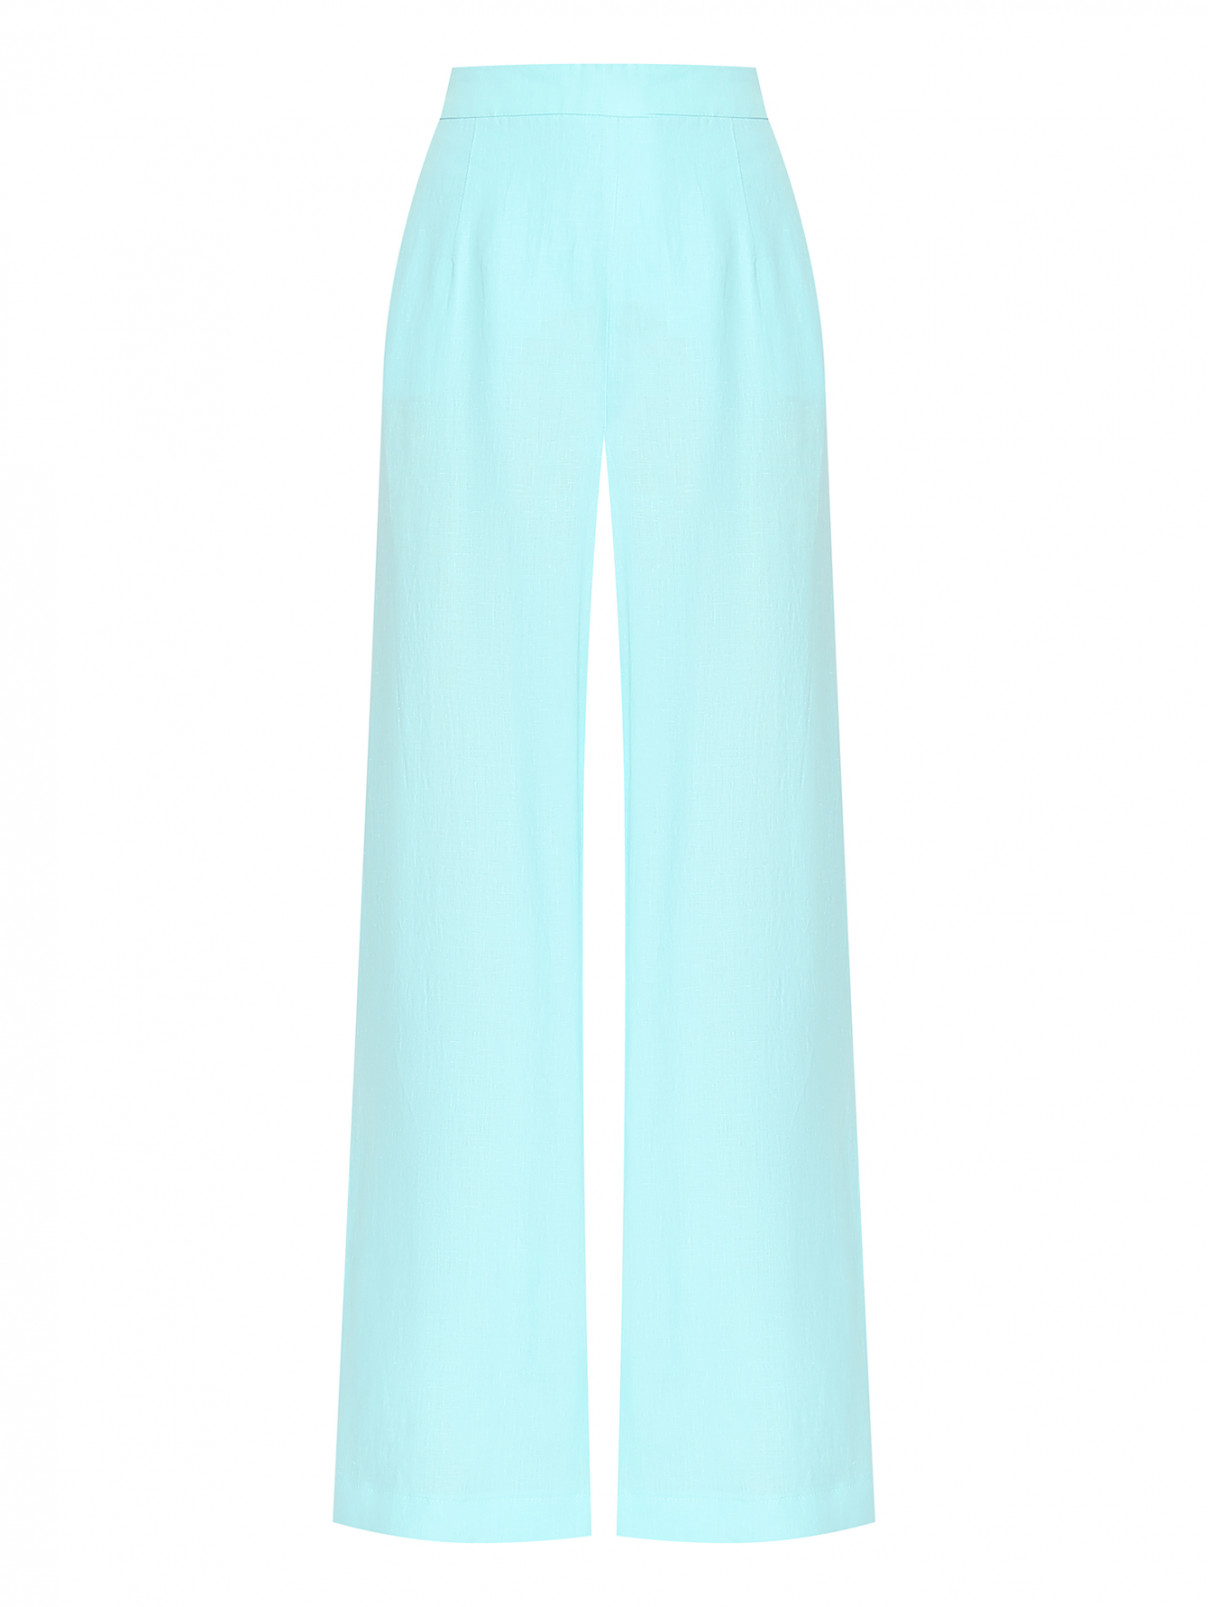 Свободные брюки из льна Luisa Spagnoli  –  Общий вид  – Цвет:  Синий